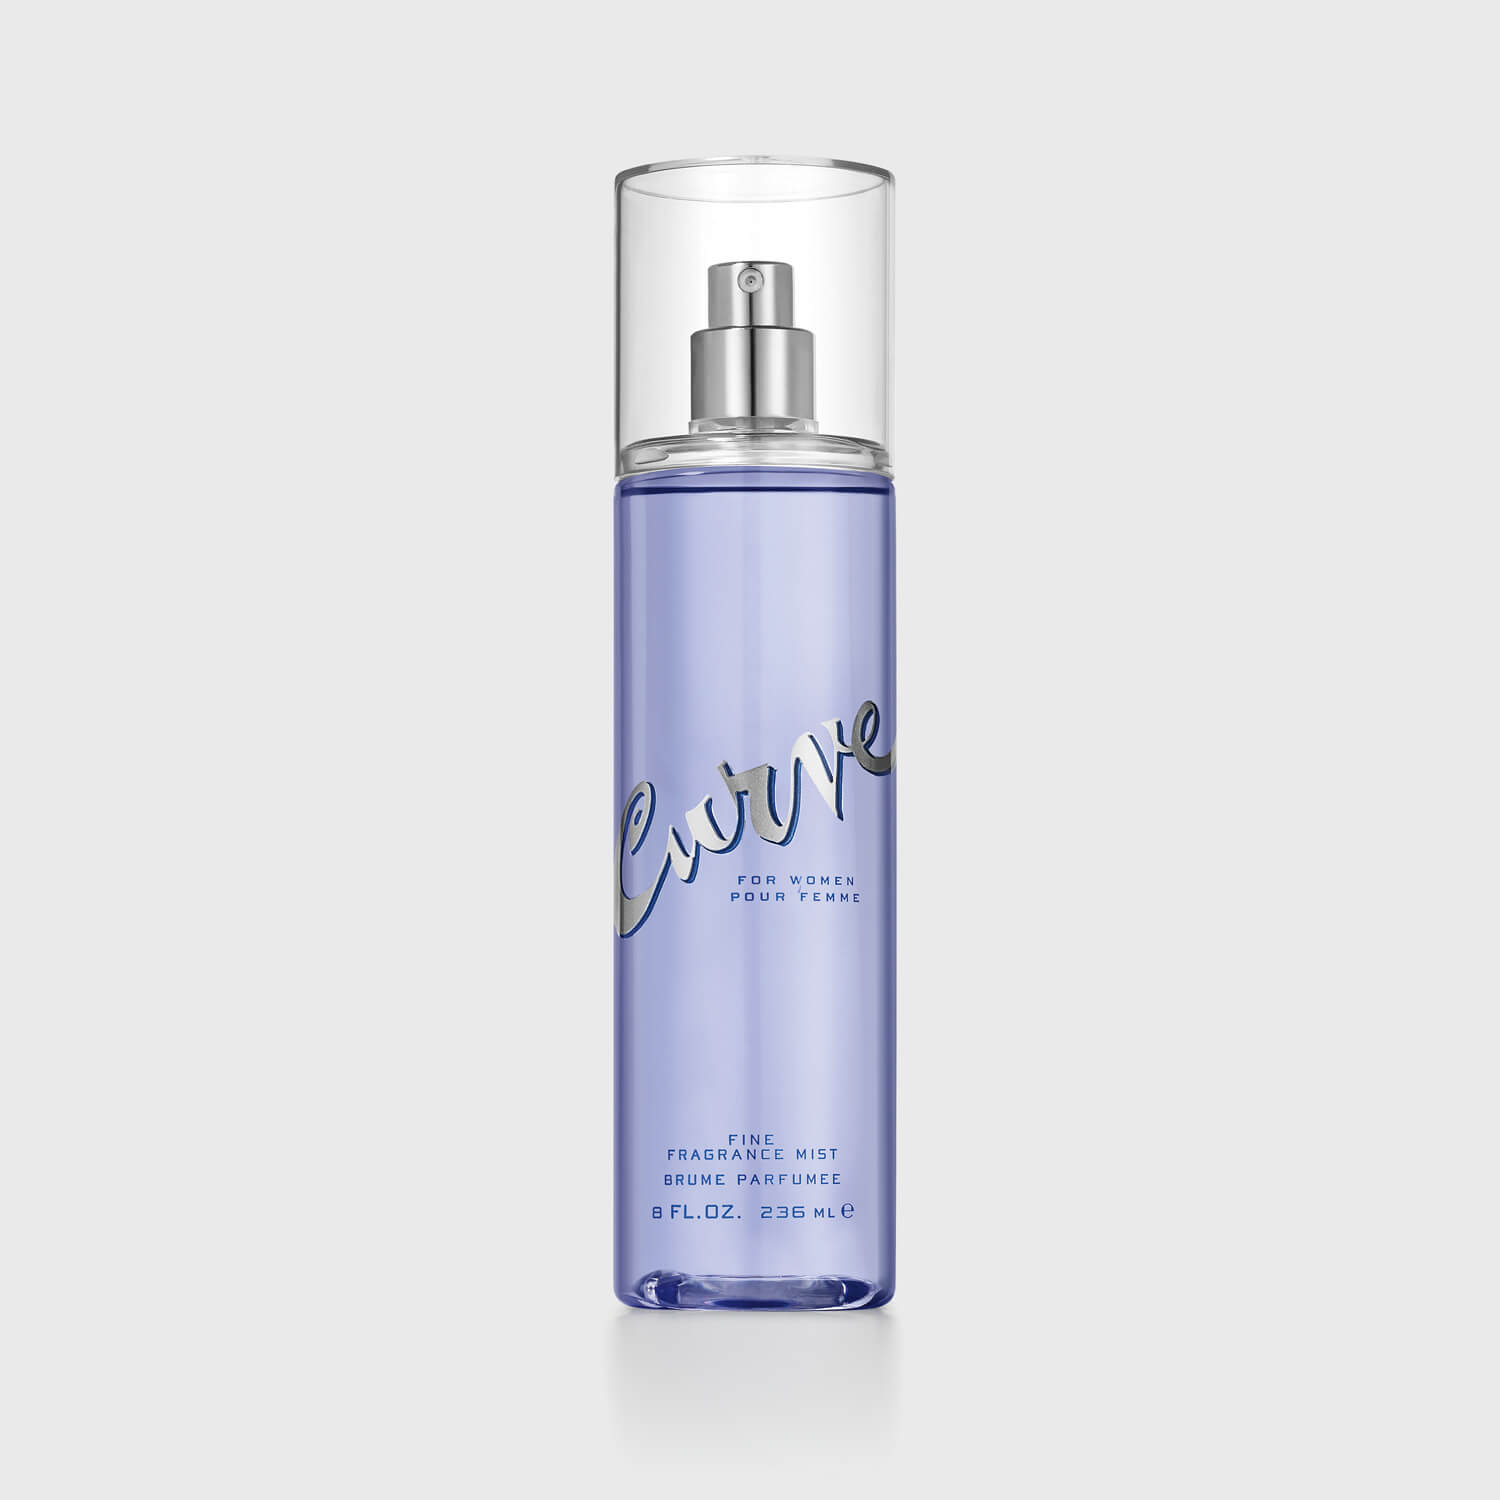 Curve® for Women Body Mist, 8.0 fl. oz. - Curve Fragrances